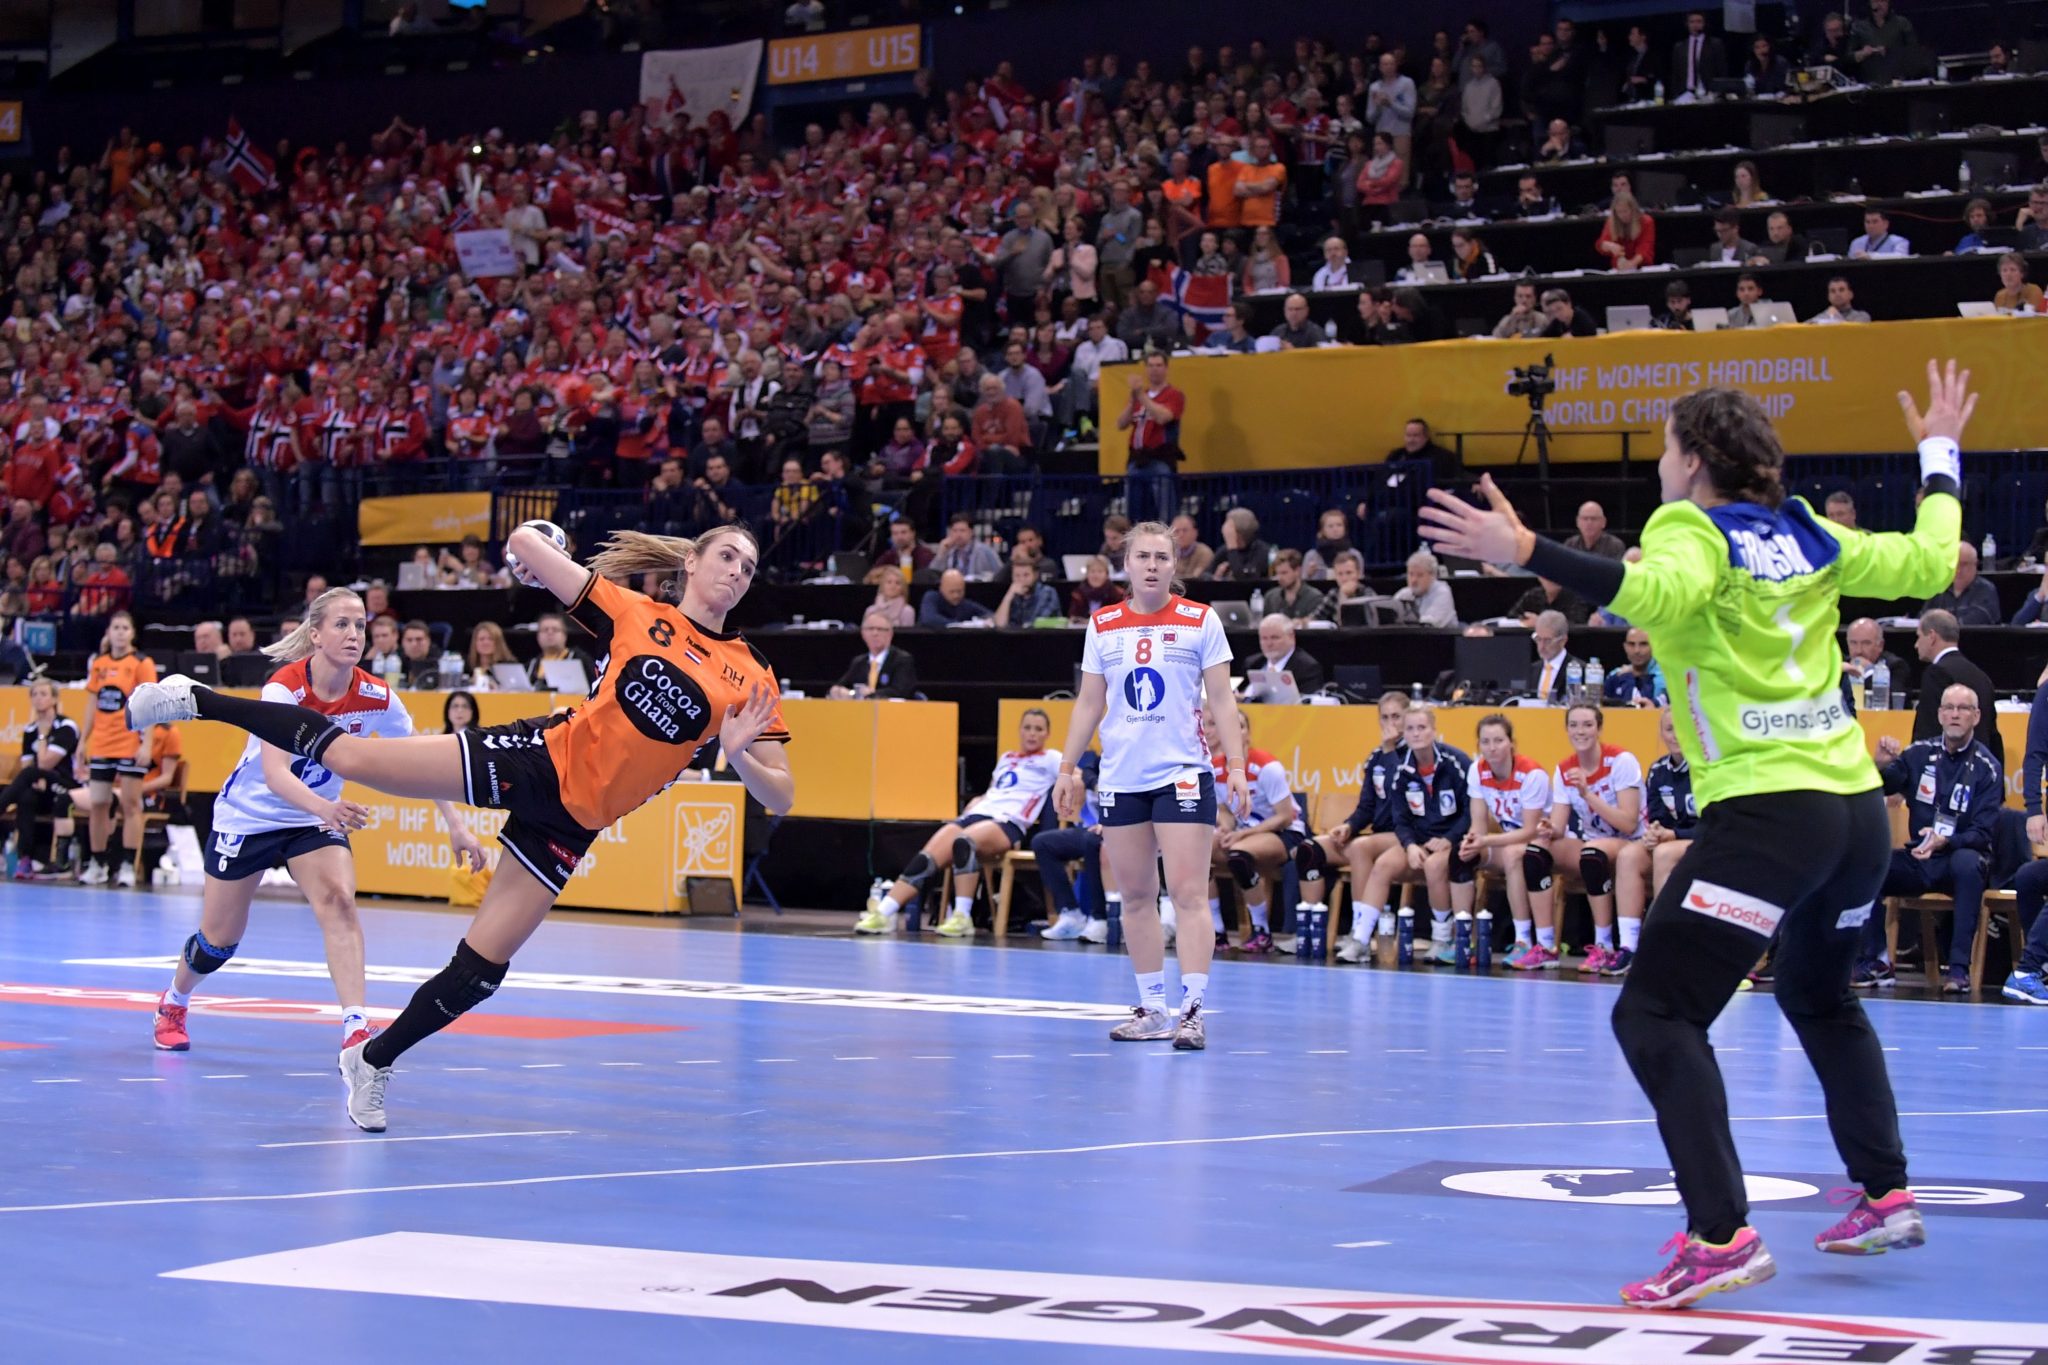 Nederlands Damesteam Mist Finale Na Verlies Tegen Sterk Noorwegen